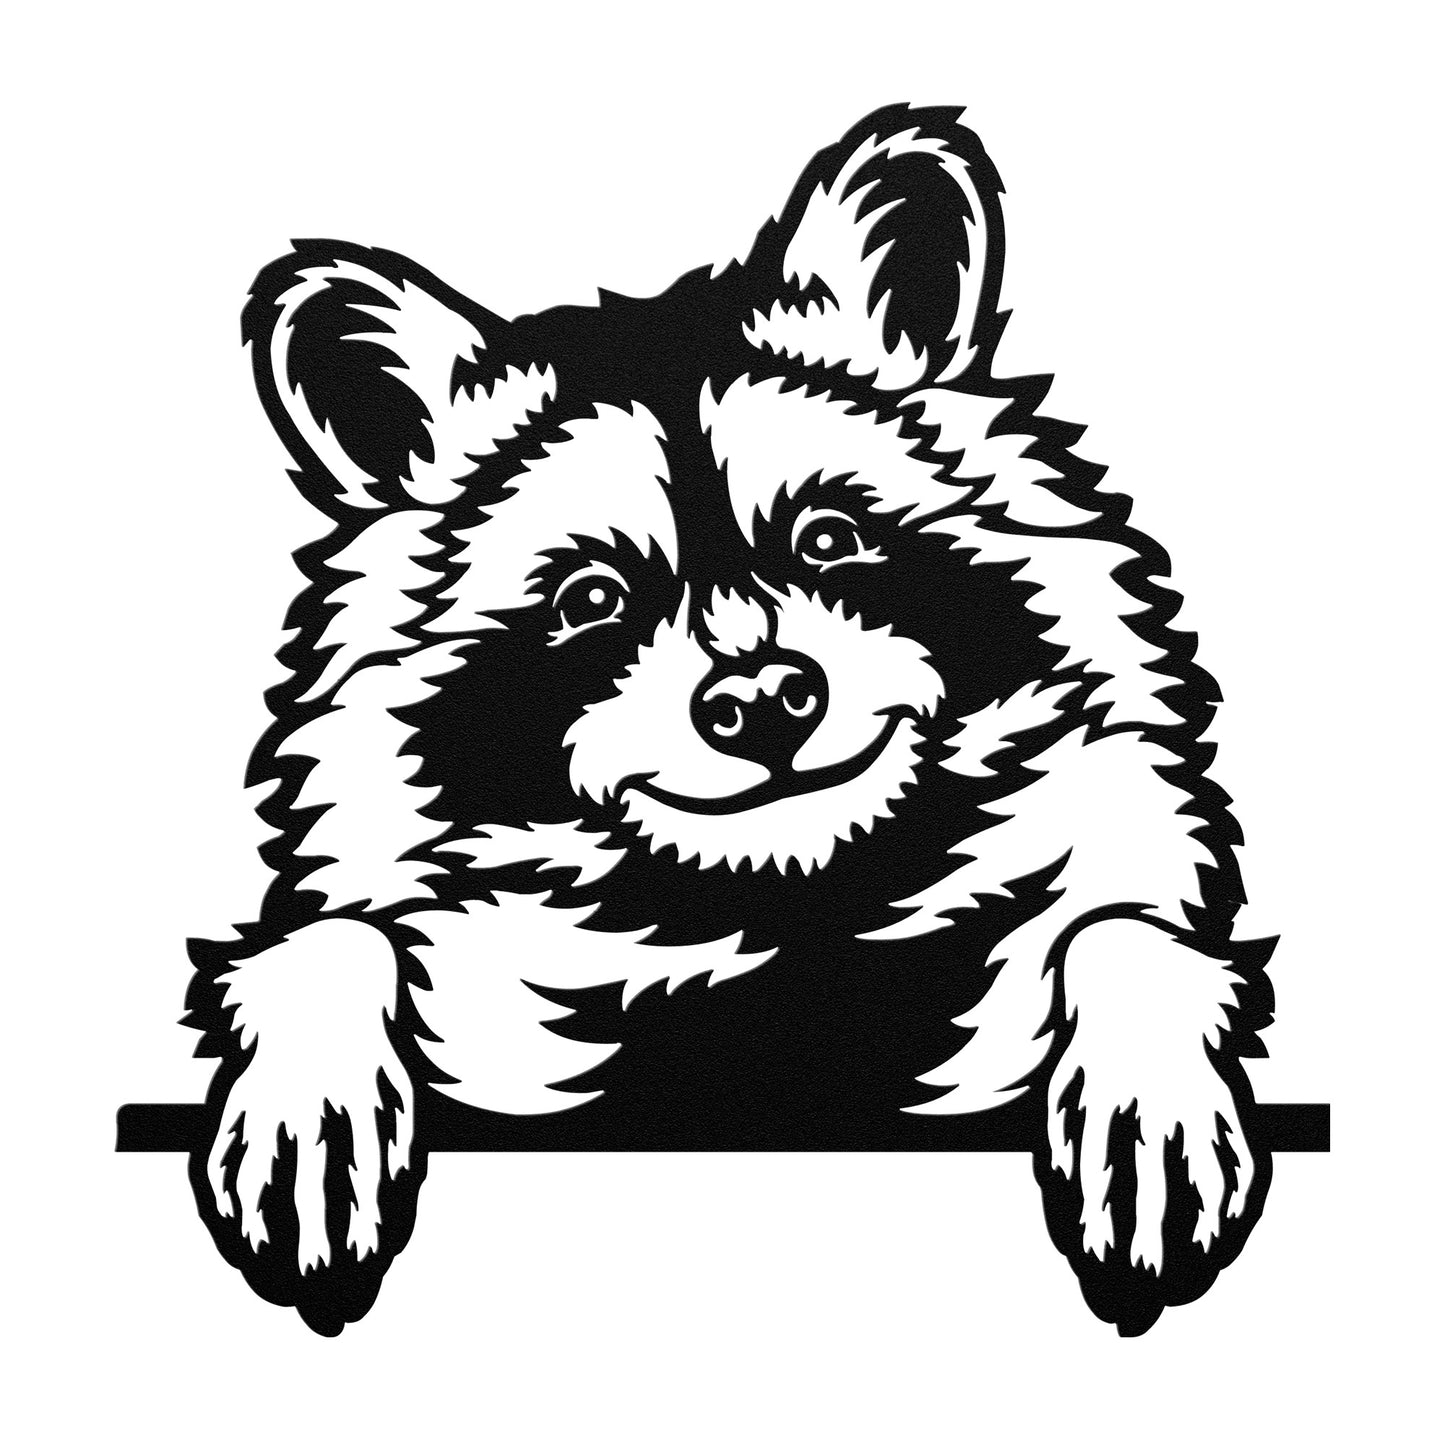 The Peeking Raccoon - Raccoon Paradise